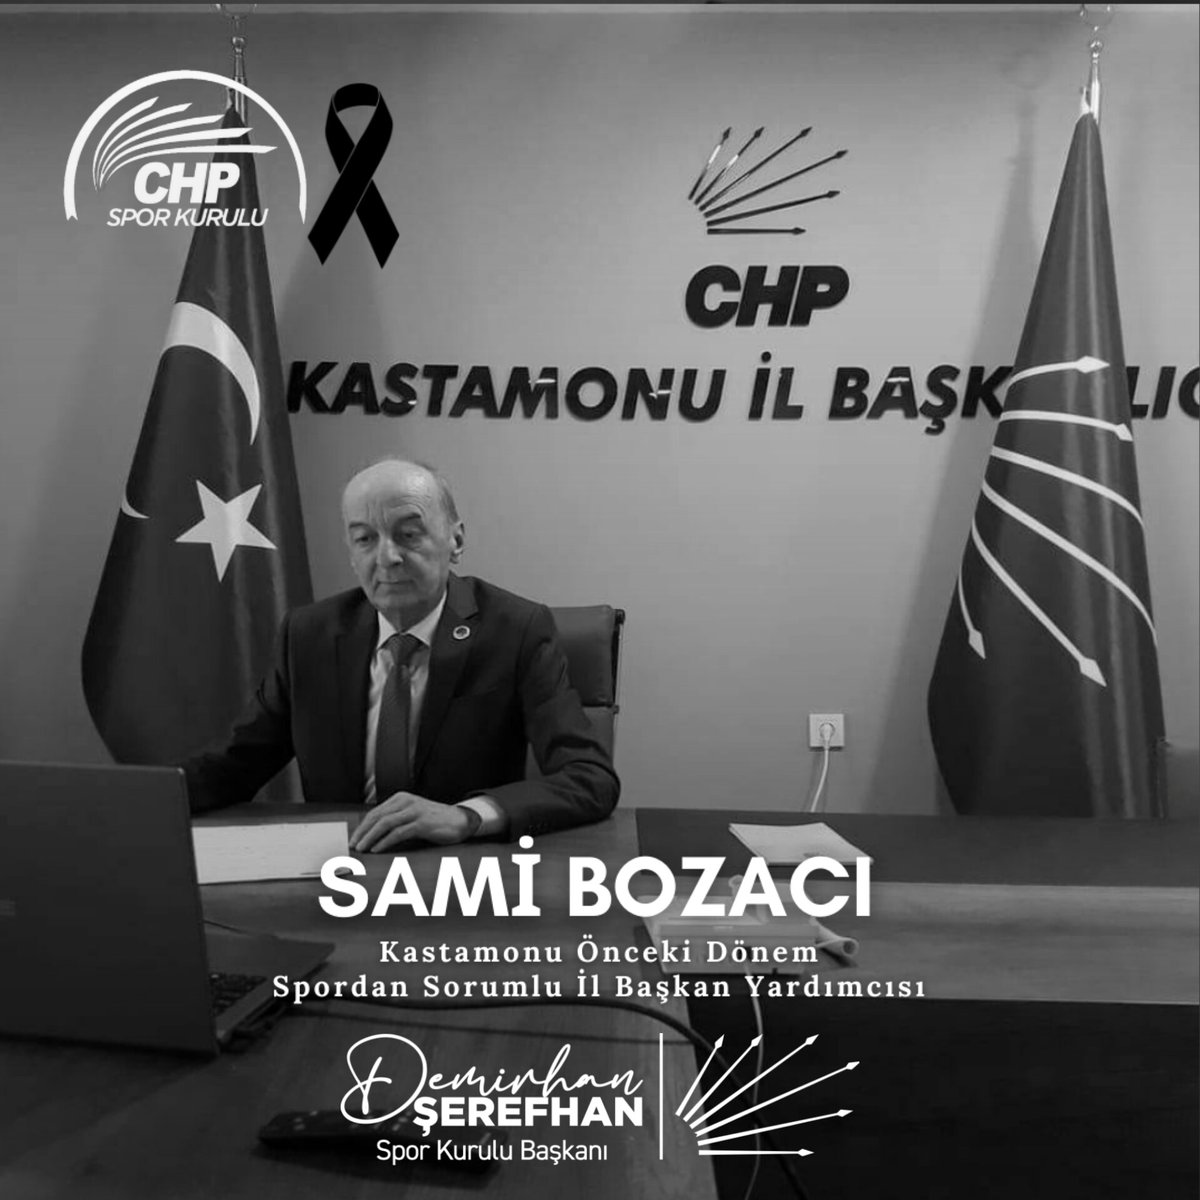 CHP Kastamonu Önceki dönem Spordan Sorumlu İl Başkan Yardımcısı Sami Bozacı'nın vefatını derin bir üzüntüyle öğrenmiş bulunuyoruz. Merhum Sami Bozacı'ya Allah’tan rahmet, yakınlarına, sevenlerine ve partimize başsağlığı dileriz. #CHPSporKurulu